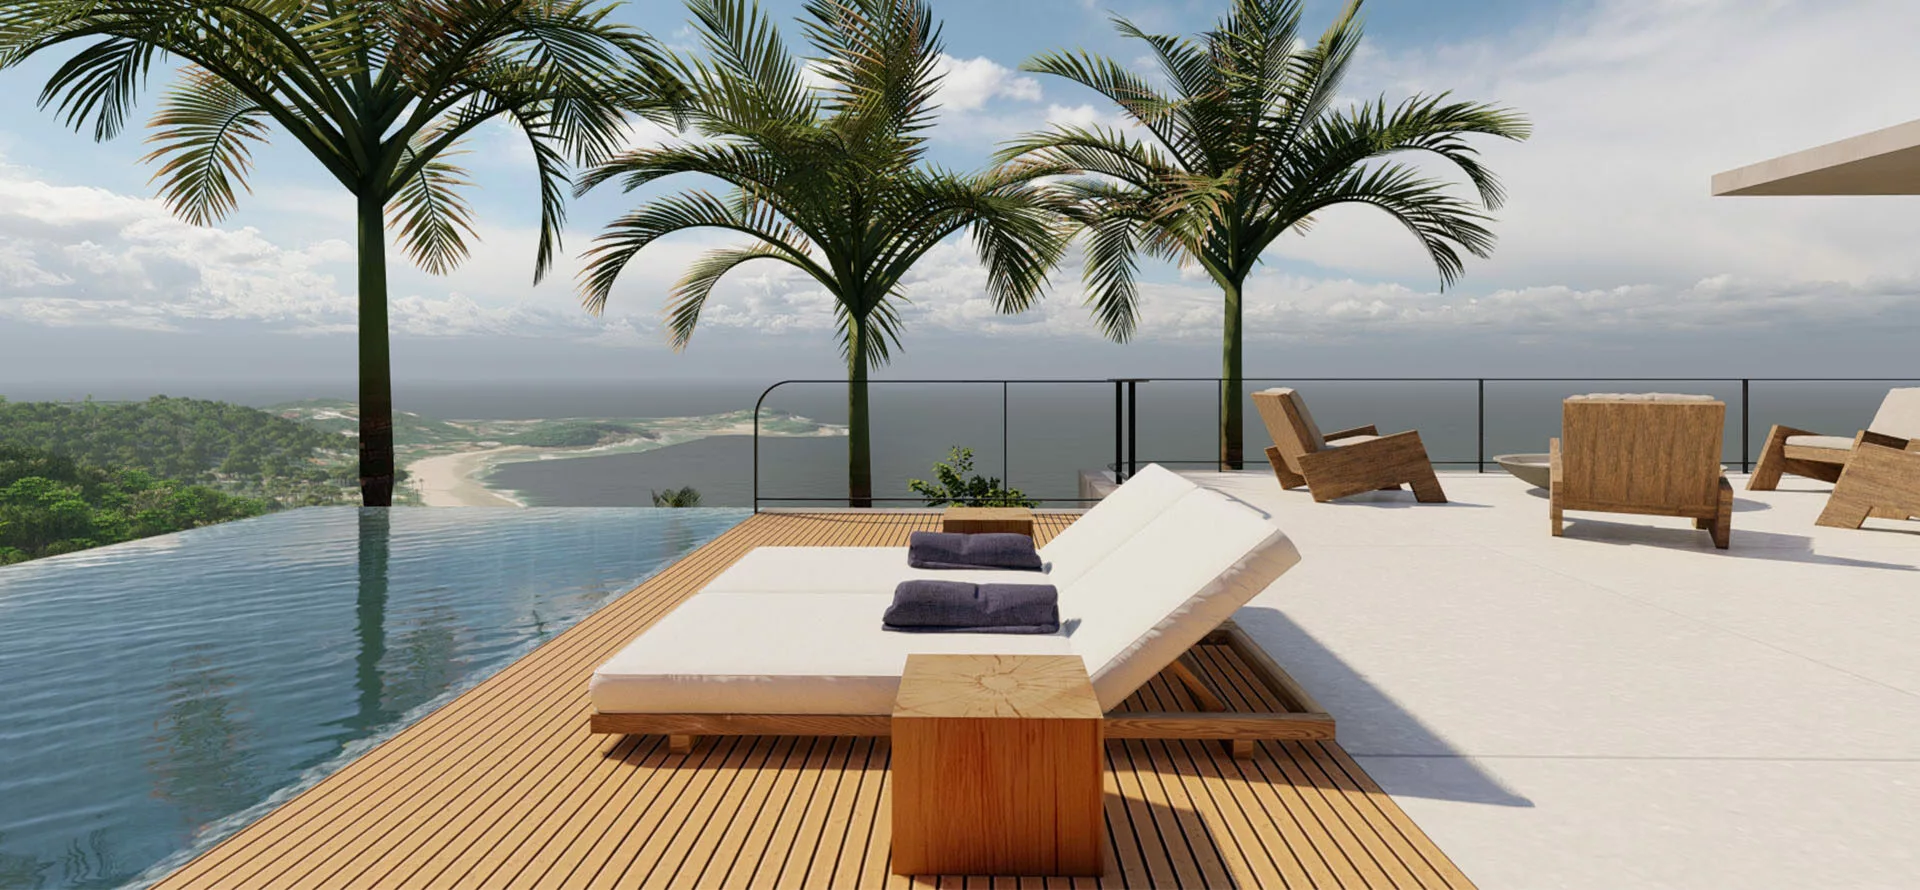 <p style="text-align: center;">Investir em viver bem. Uma seleção de <em>terrenos especiais</em> nas melhores praias do Guarujá,<br />
com projetos de arquitetura incríveis</p>
